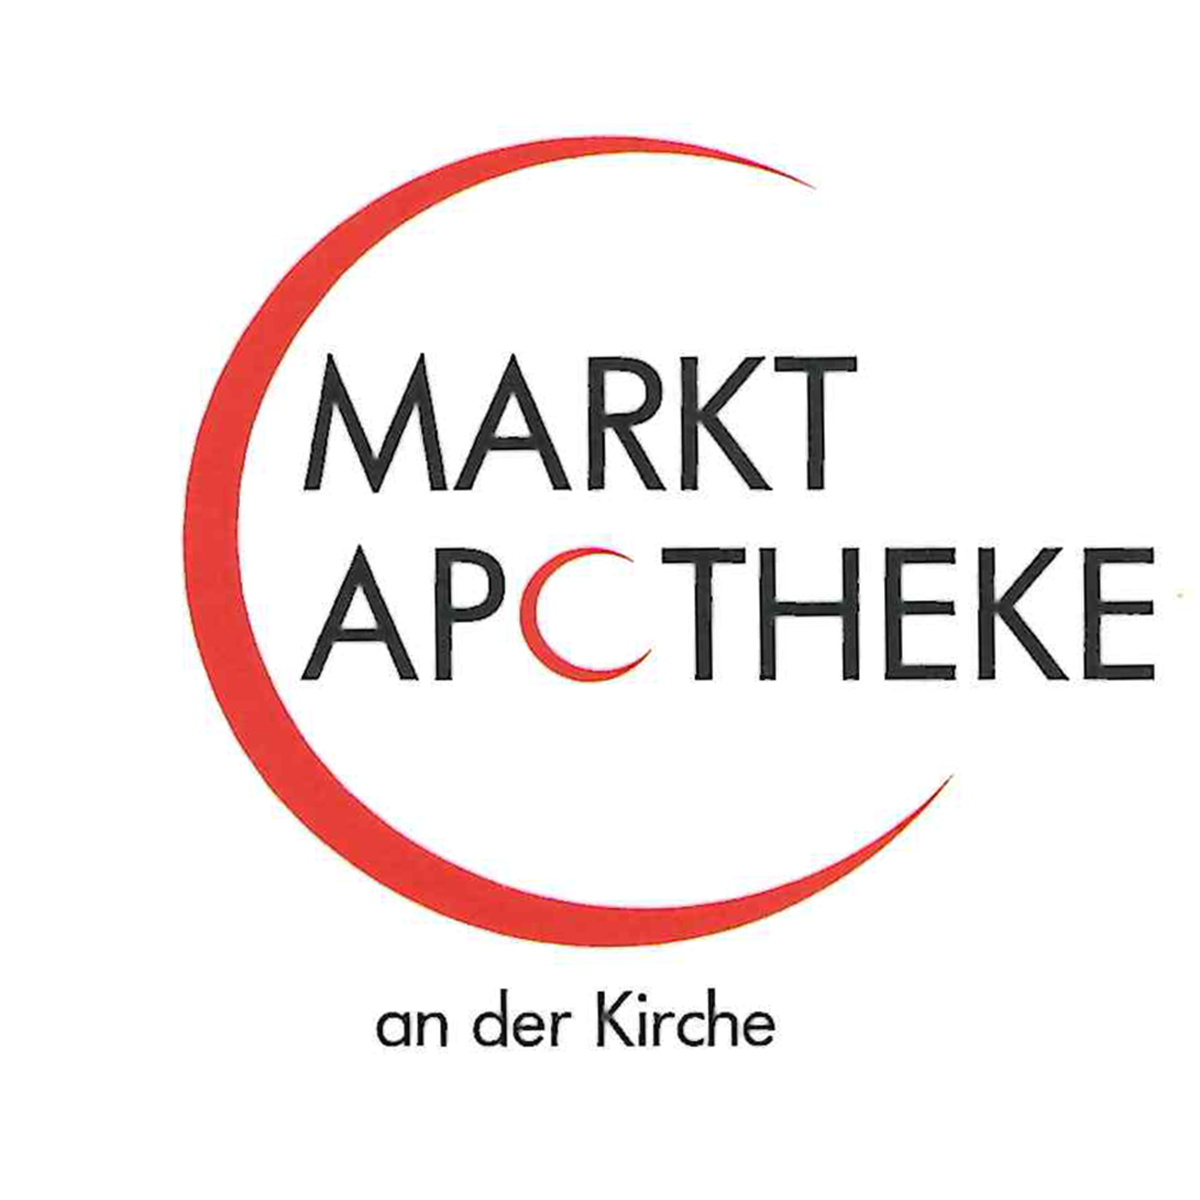 Markt-Apotheke in Willich